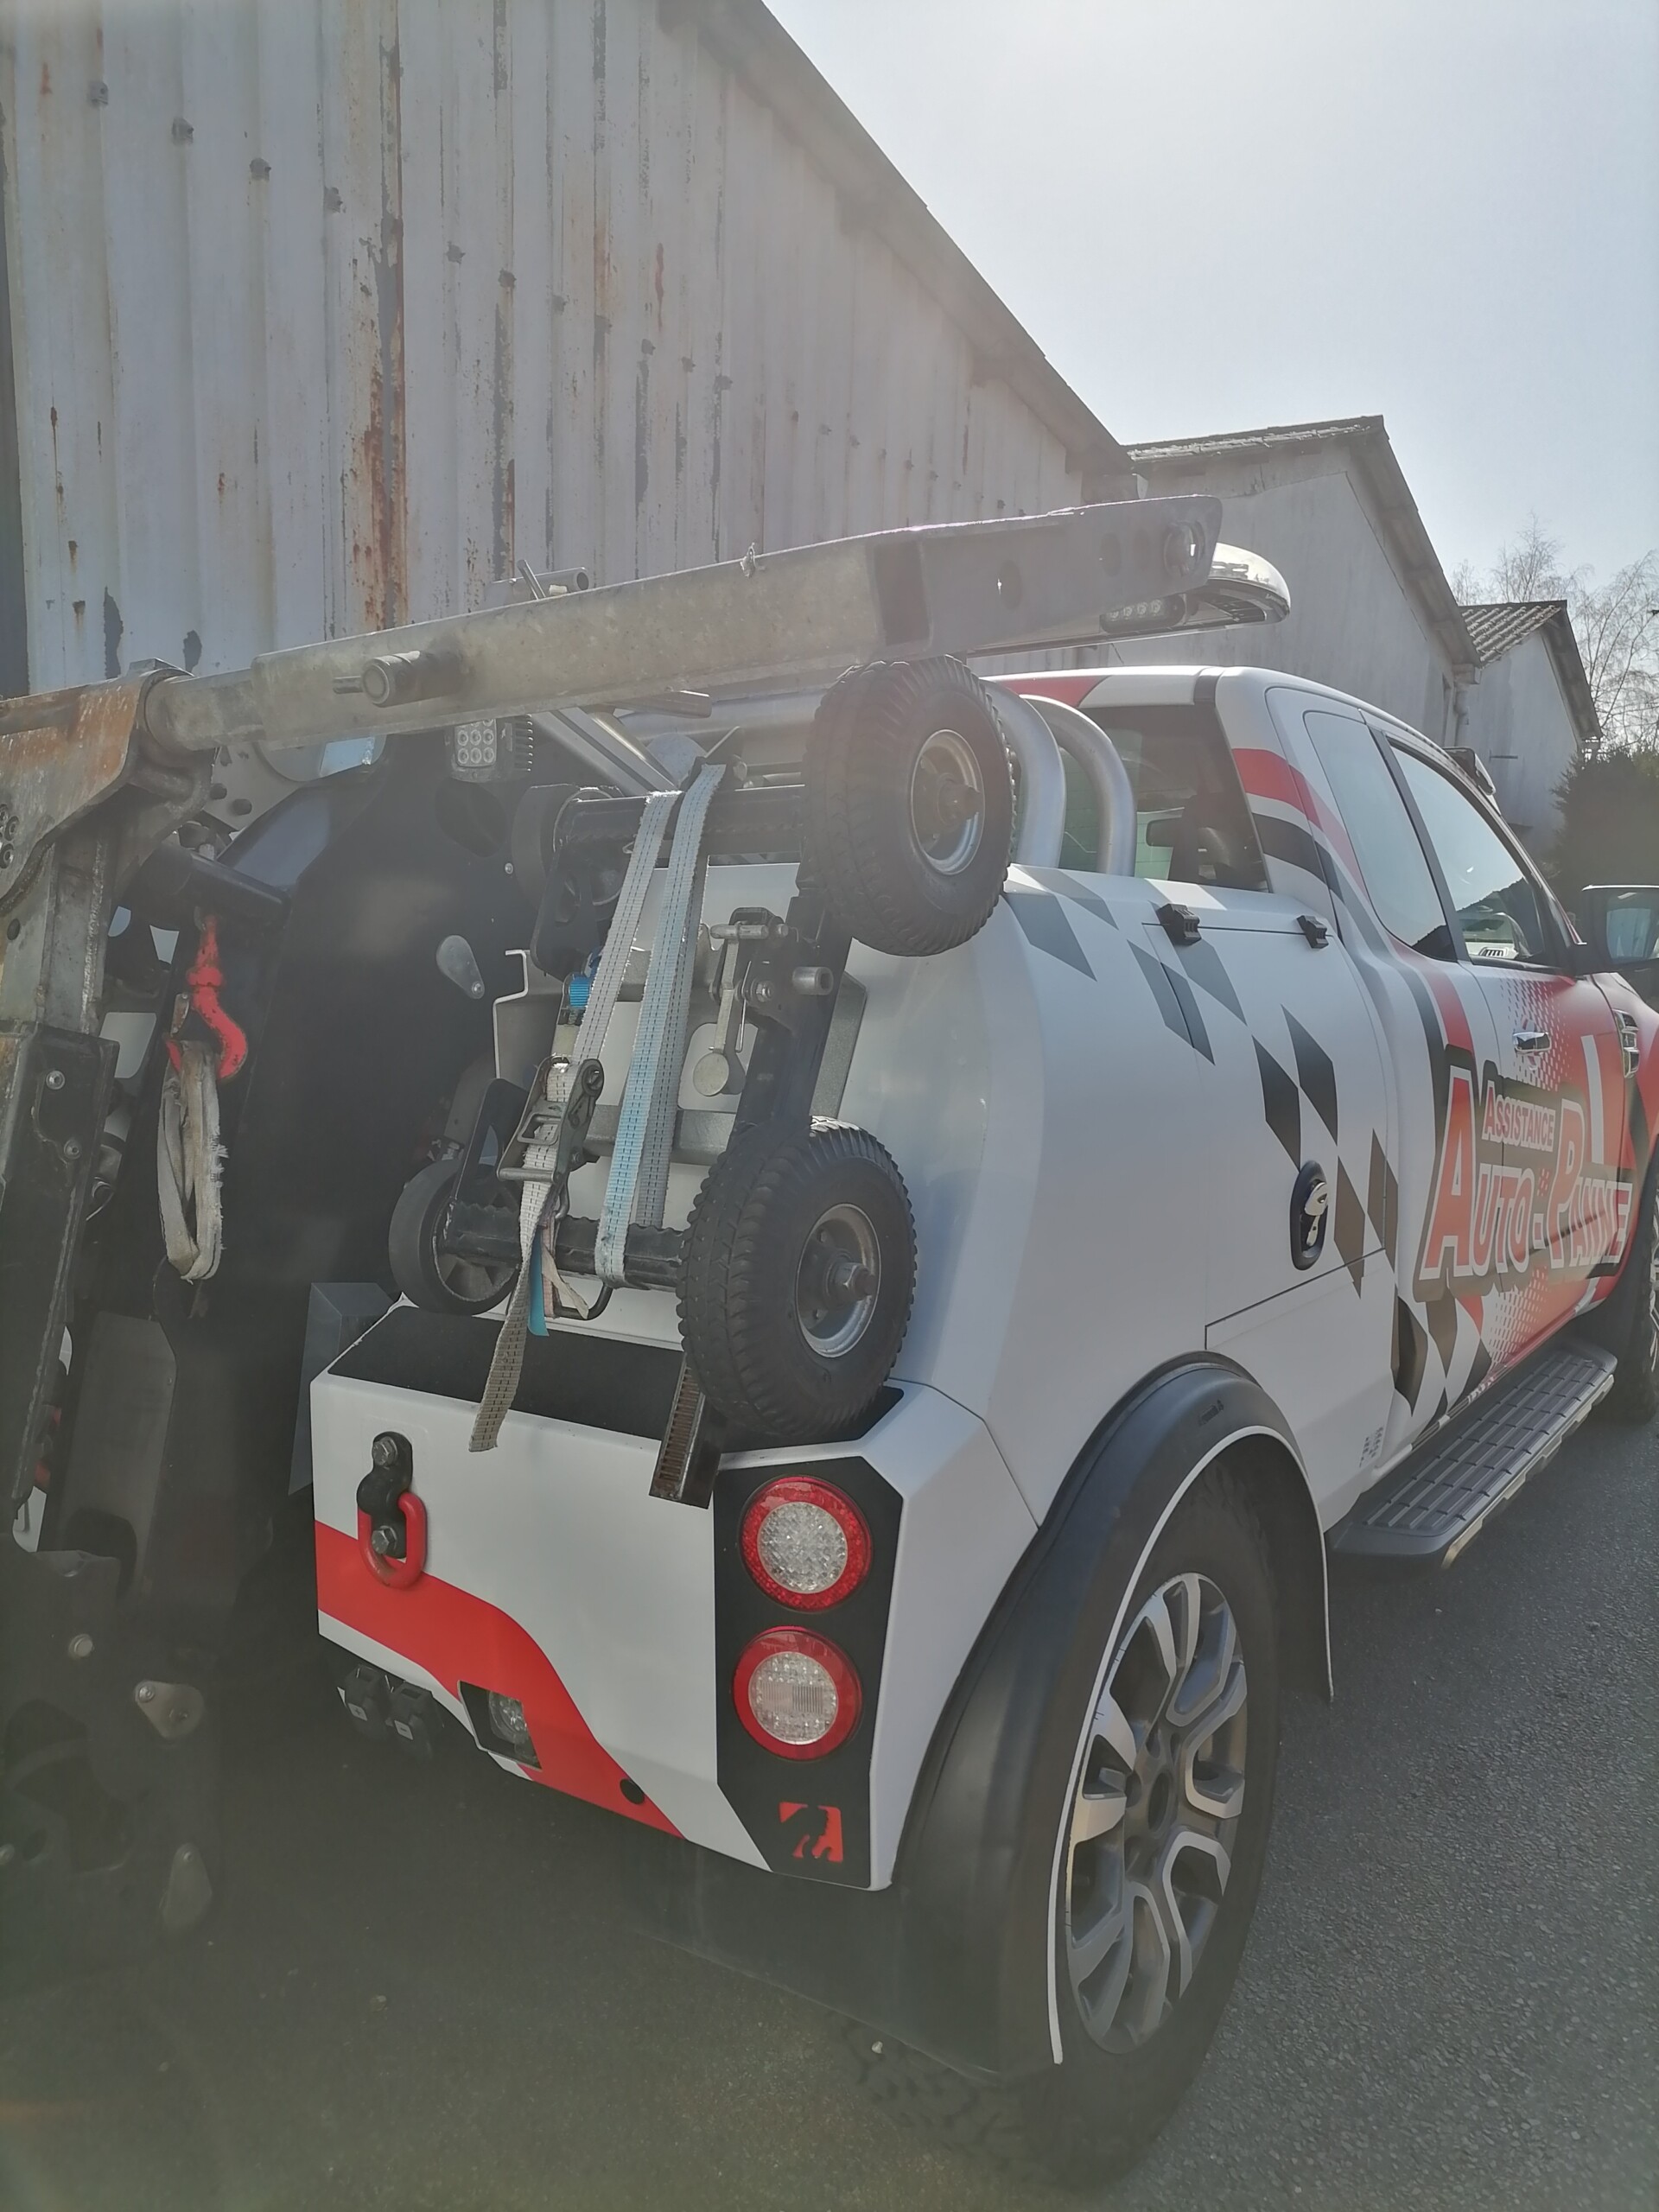 Covering d'une ford pour Assistance Auto Panne - Arrière du véhicule